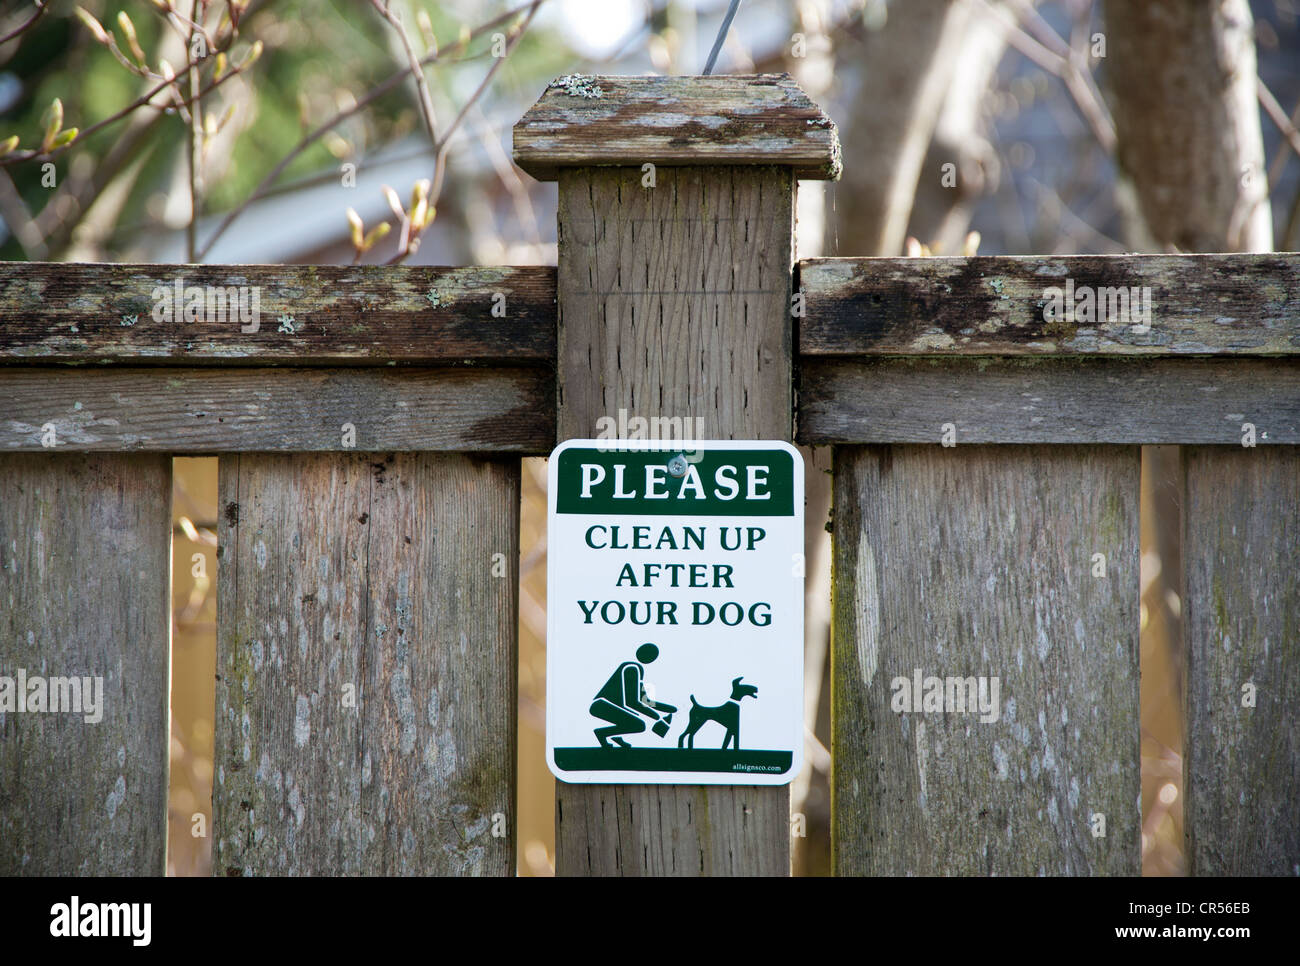 Signe sur un fencepost demande aux gens de se nettoyer après leur chien Banque D'Images